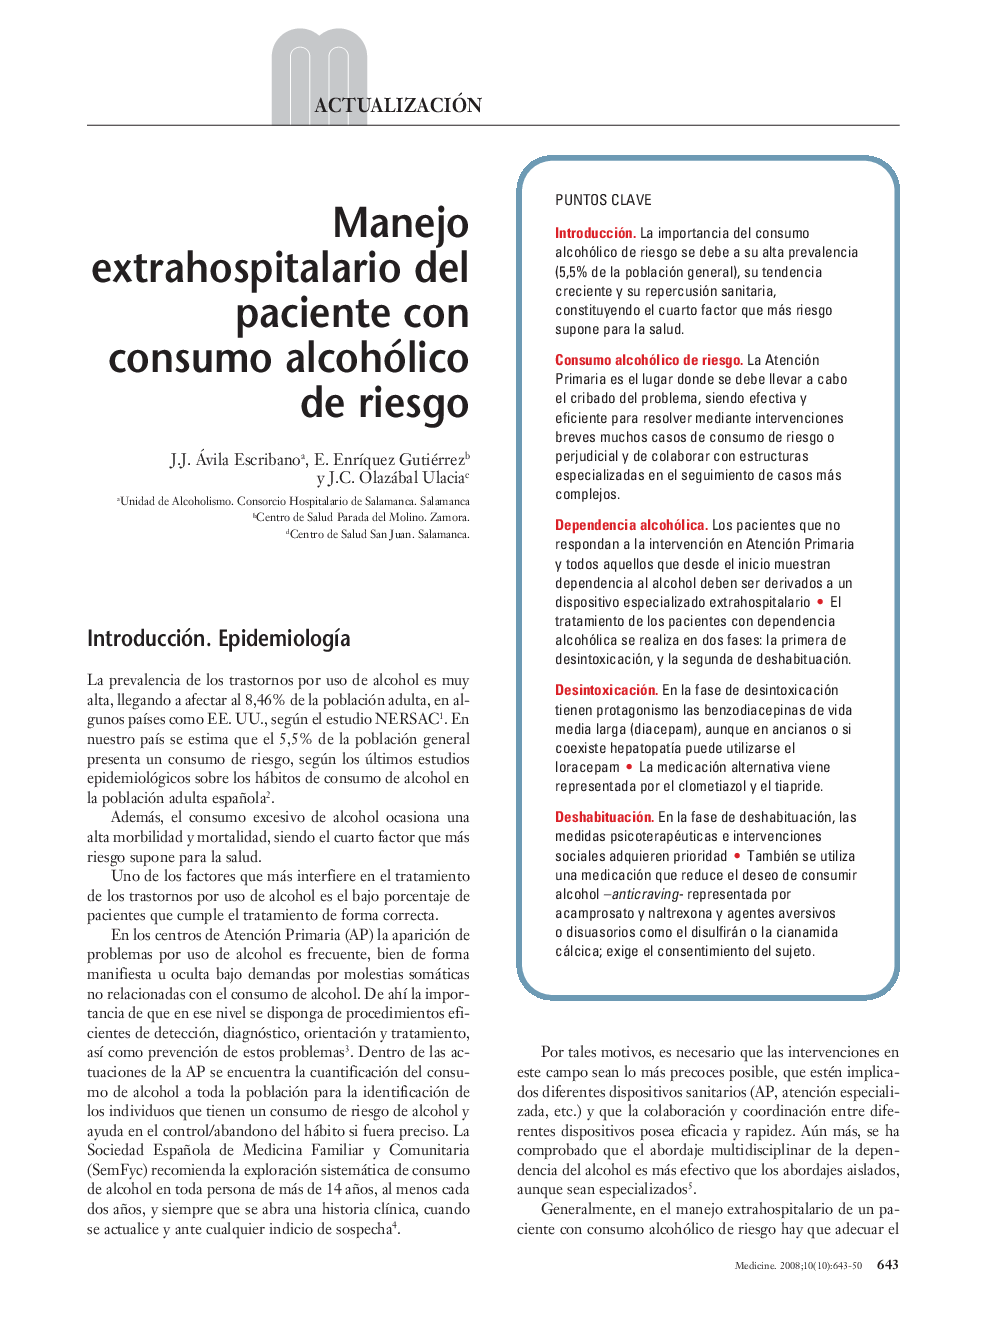 Manejo extrahospitalario del paciente con consumo alcohólico de riesgo